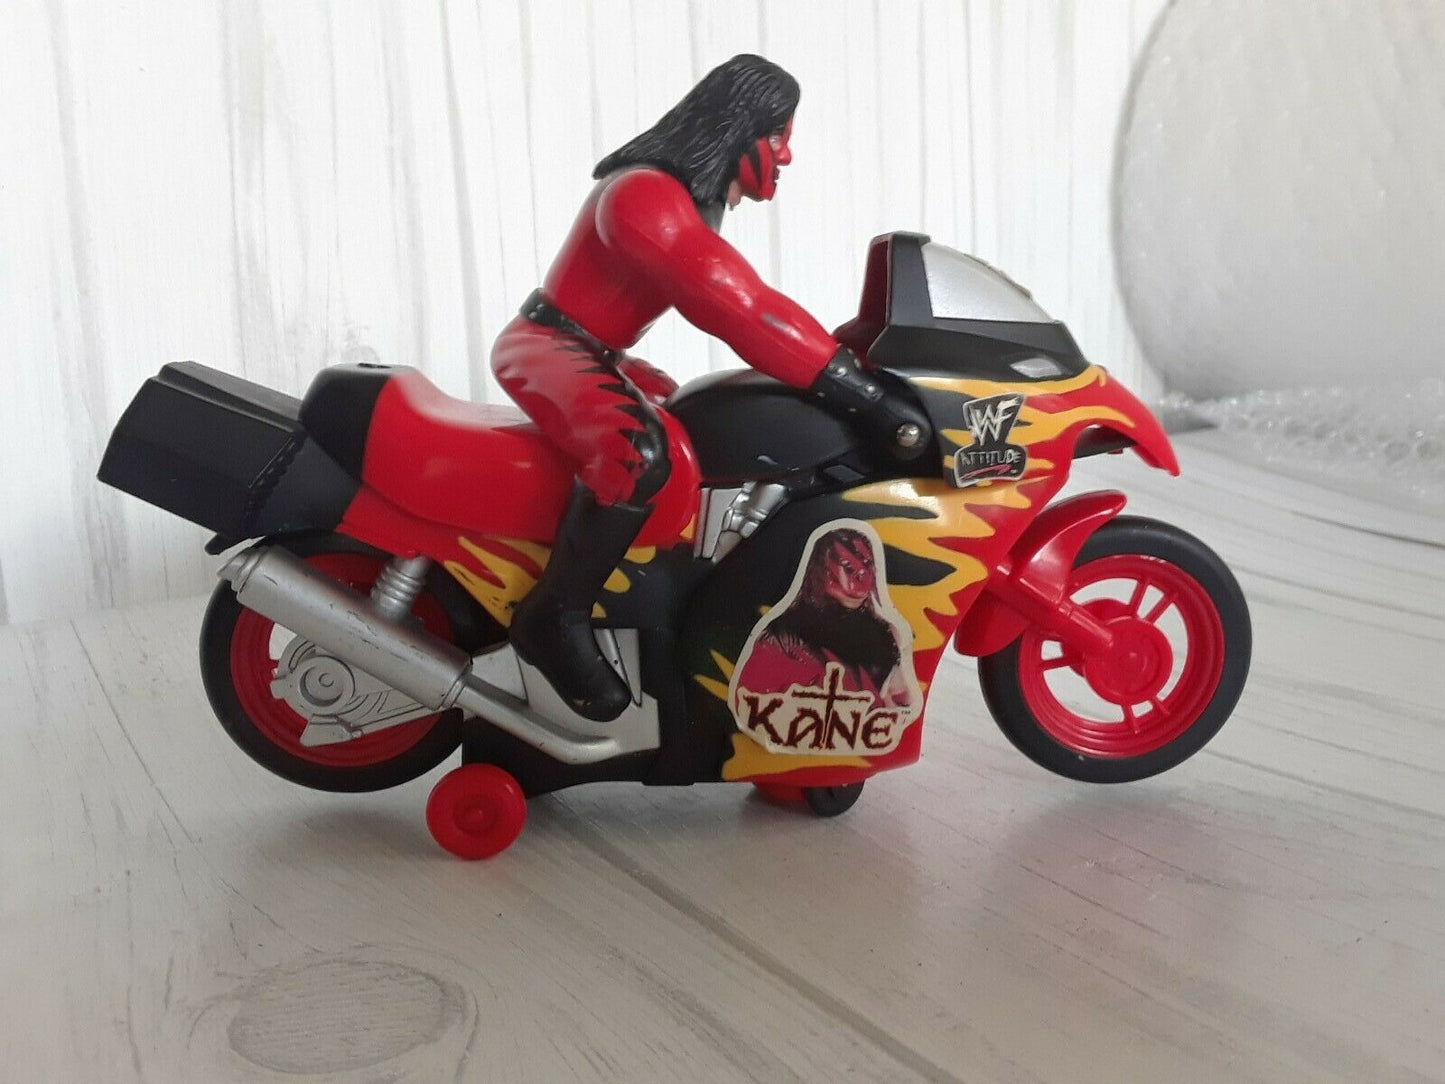 Bump N Go Kane motorcycle